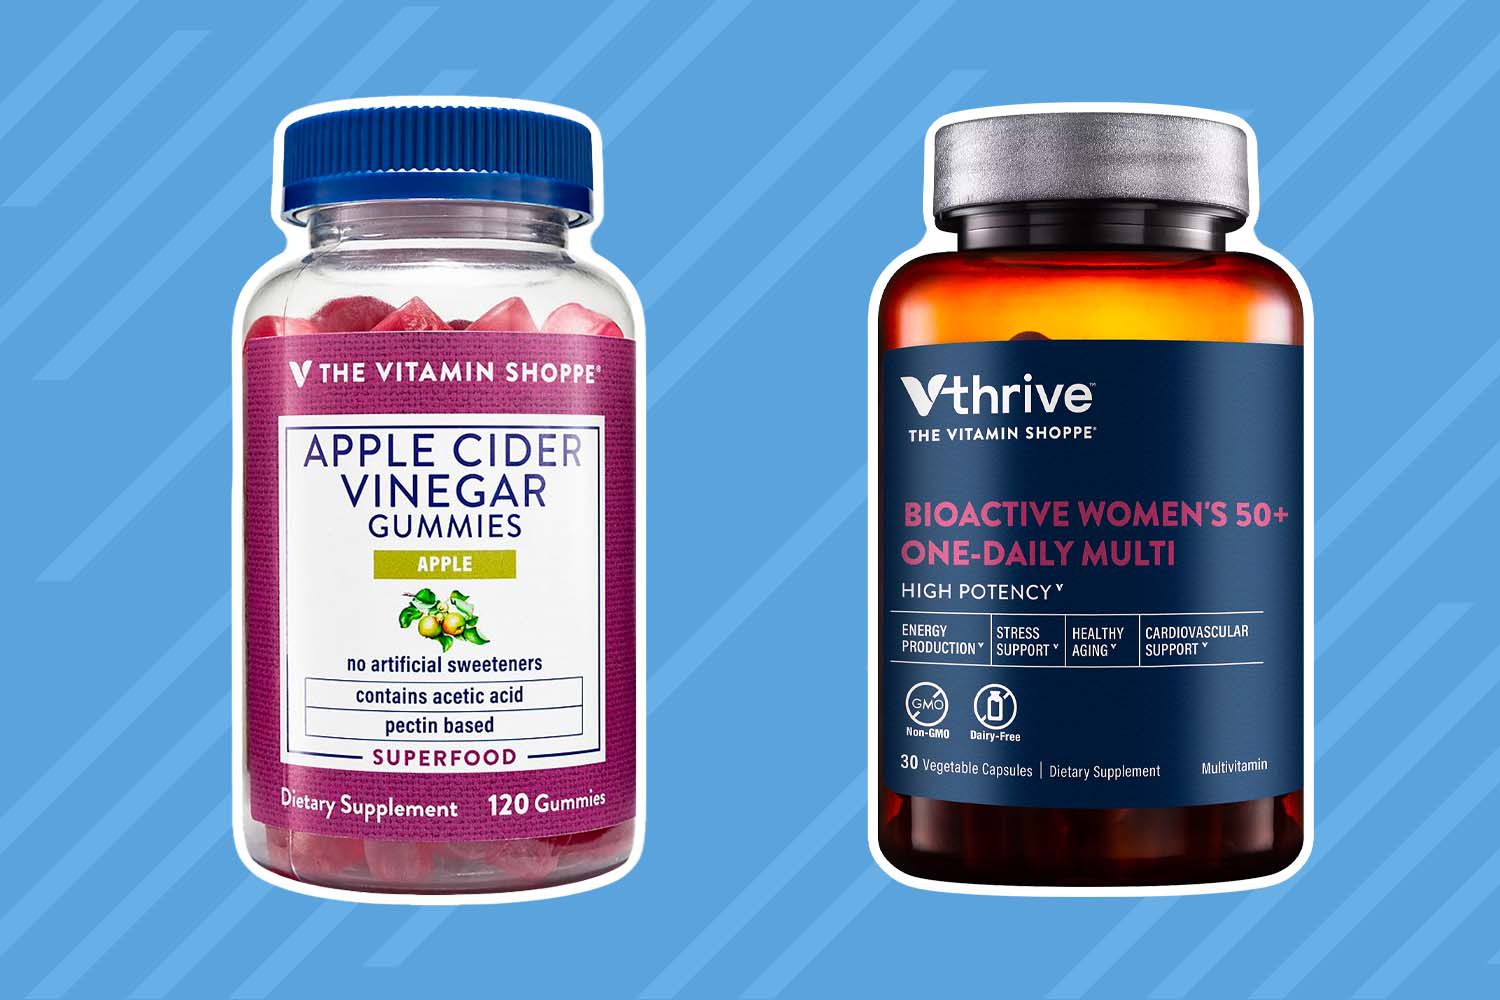   Beste plaatsen om vitamines online te kopen, volgens een diëtist